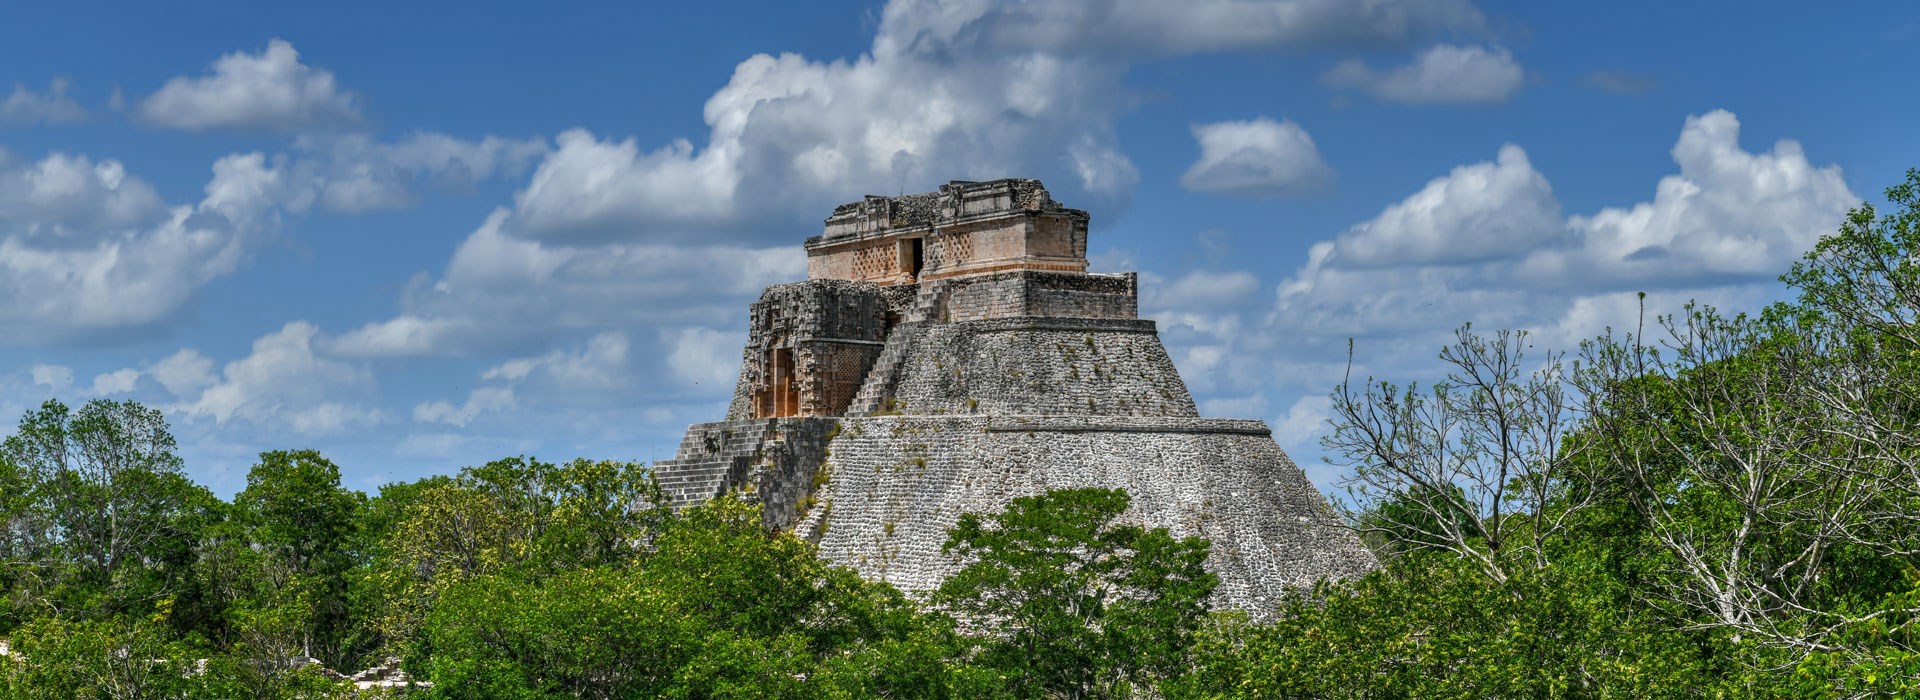 Visiter Le site archéologique d'Uxmal - Mexique